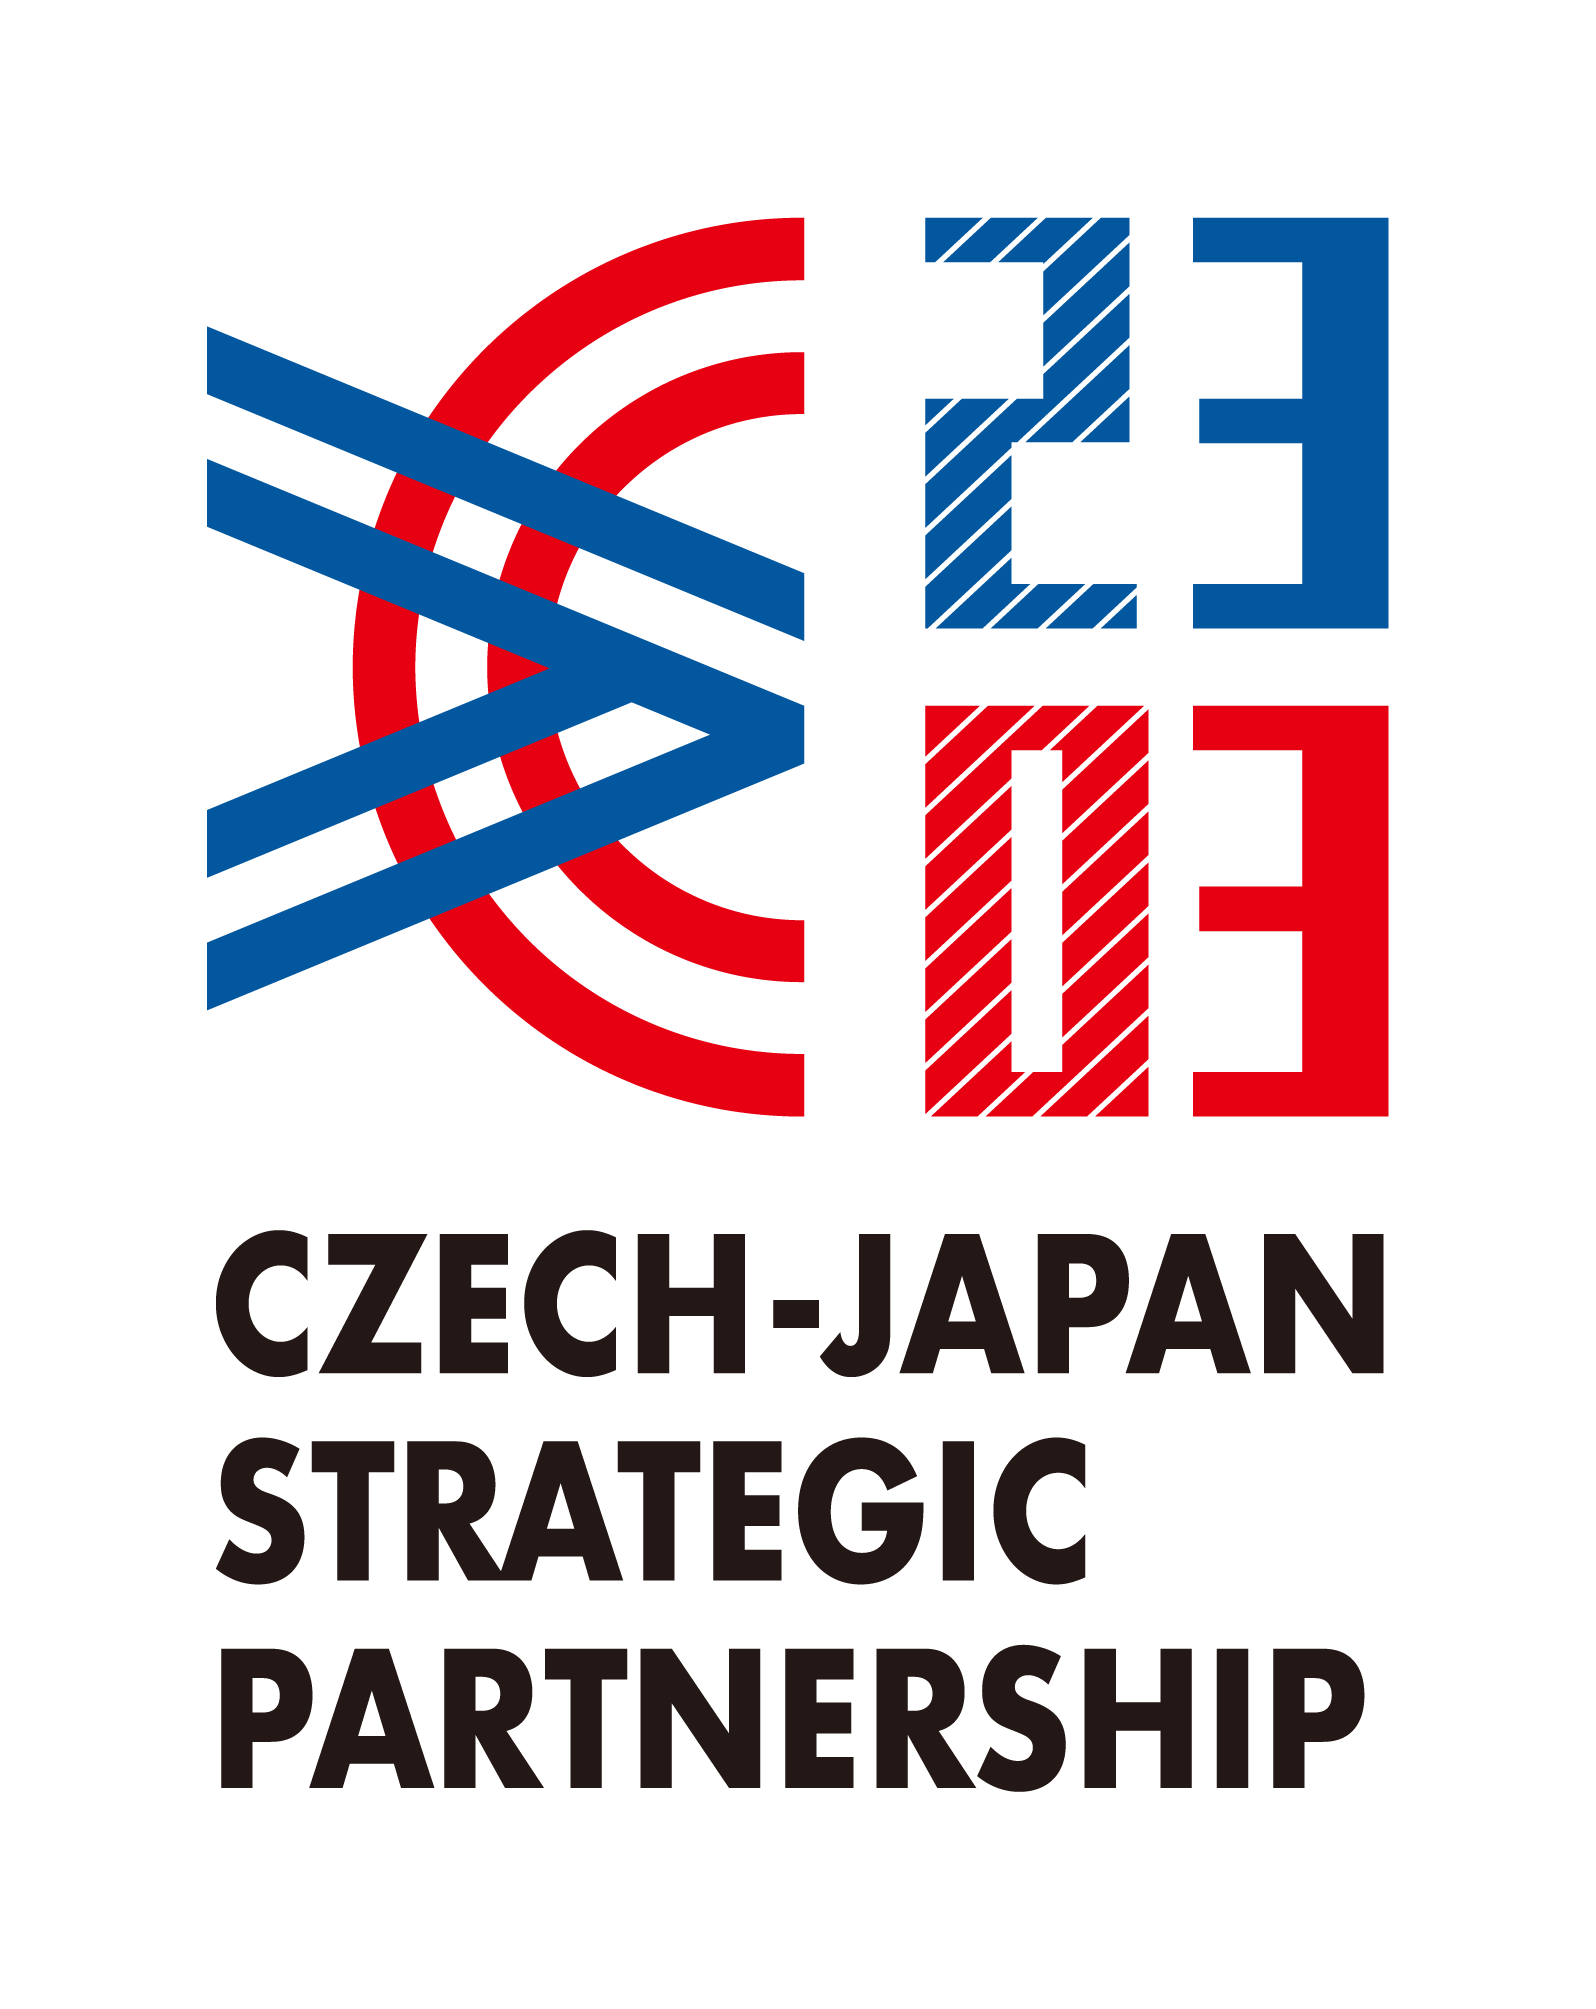 日本国とチェコ共和国の戦略的パートナーシップ